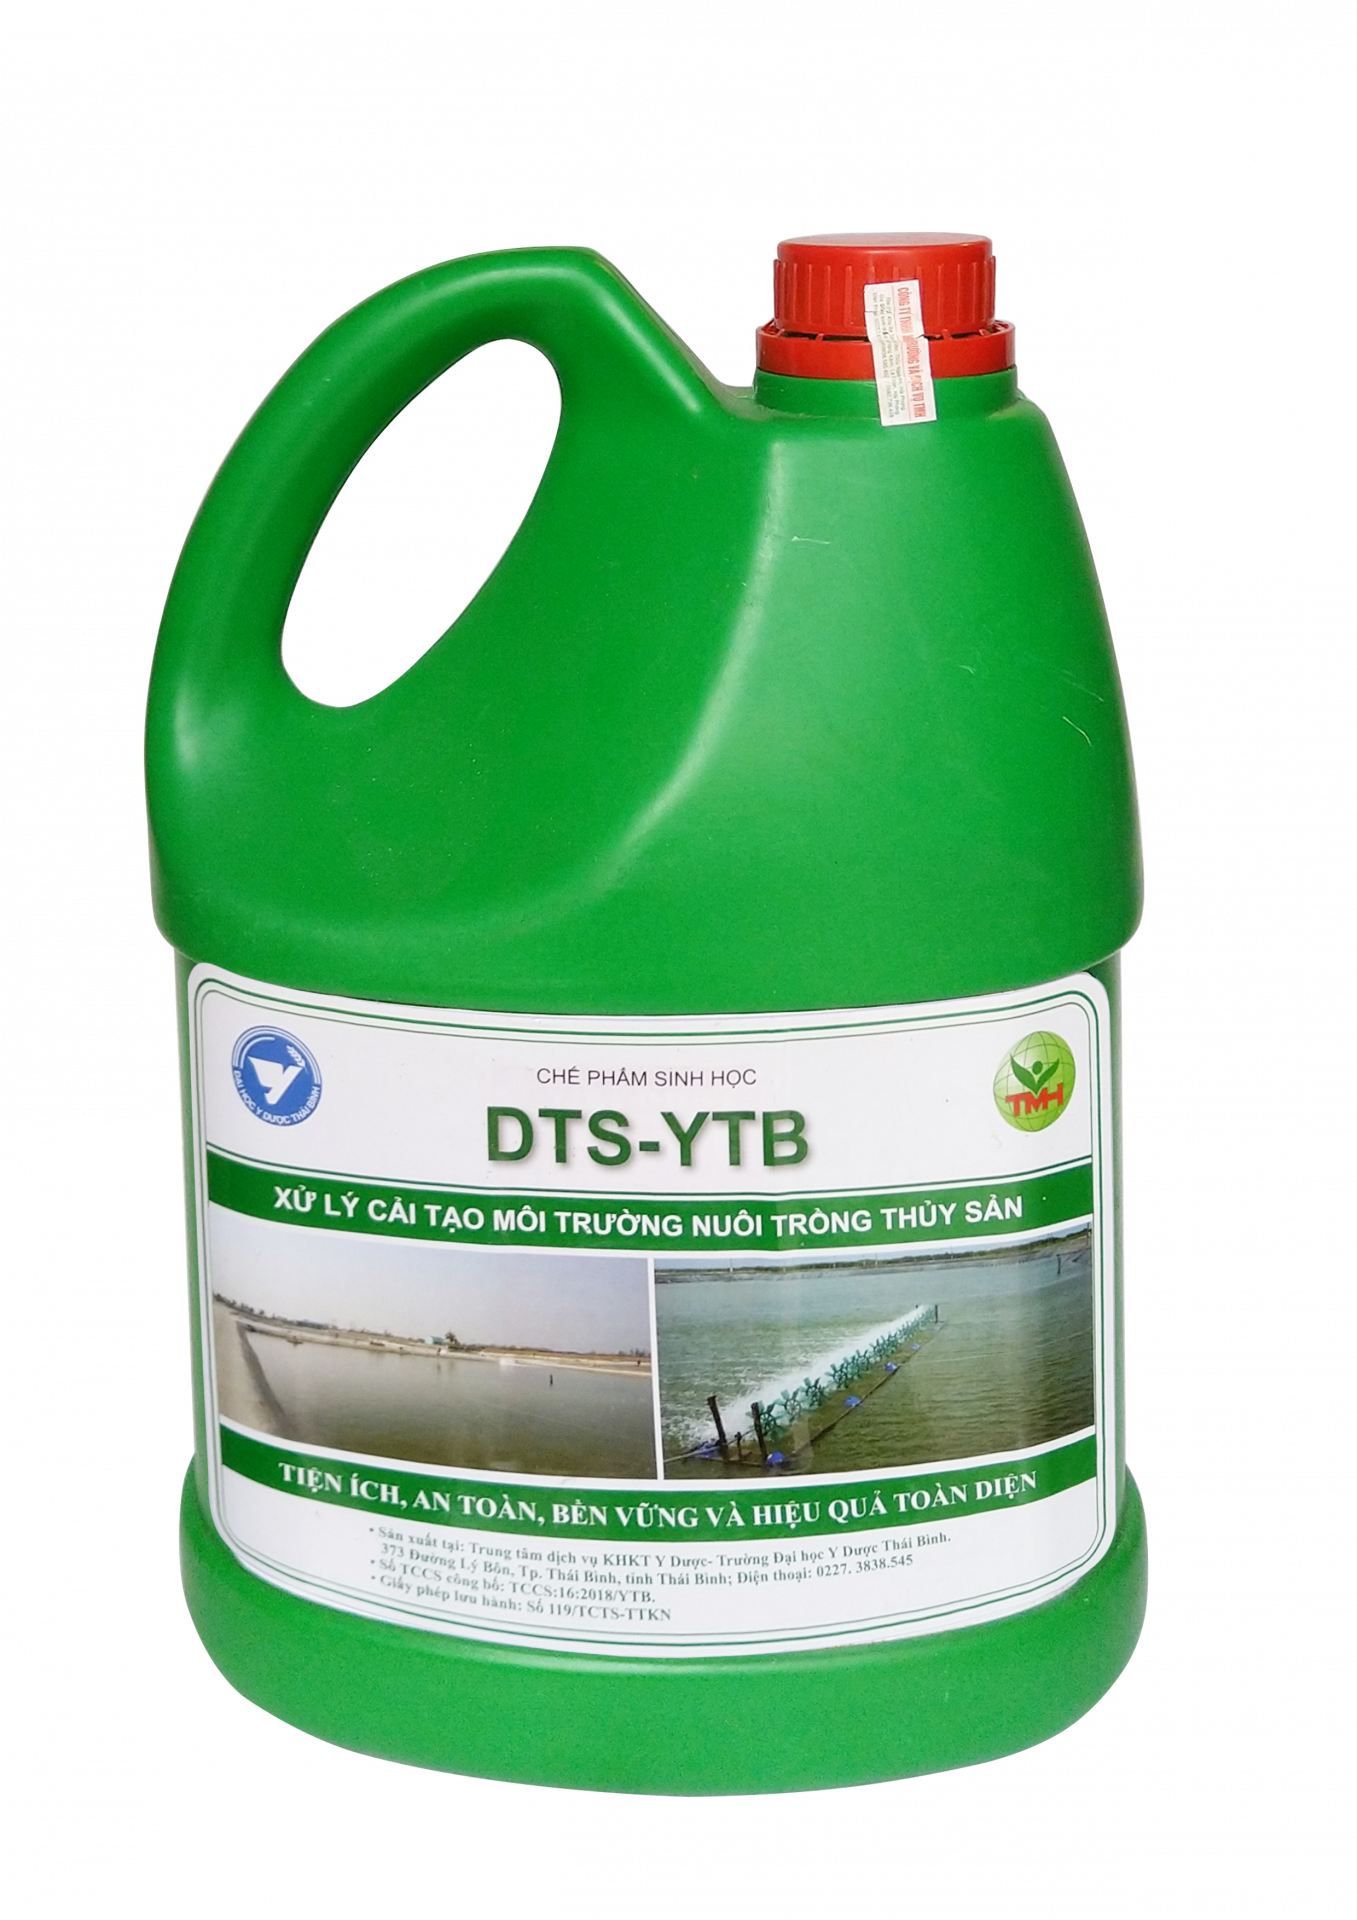 Chế phẩm vi sinh DTS-YTB can 3,5 lít